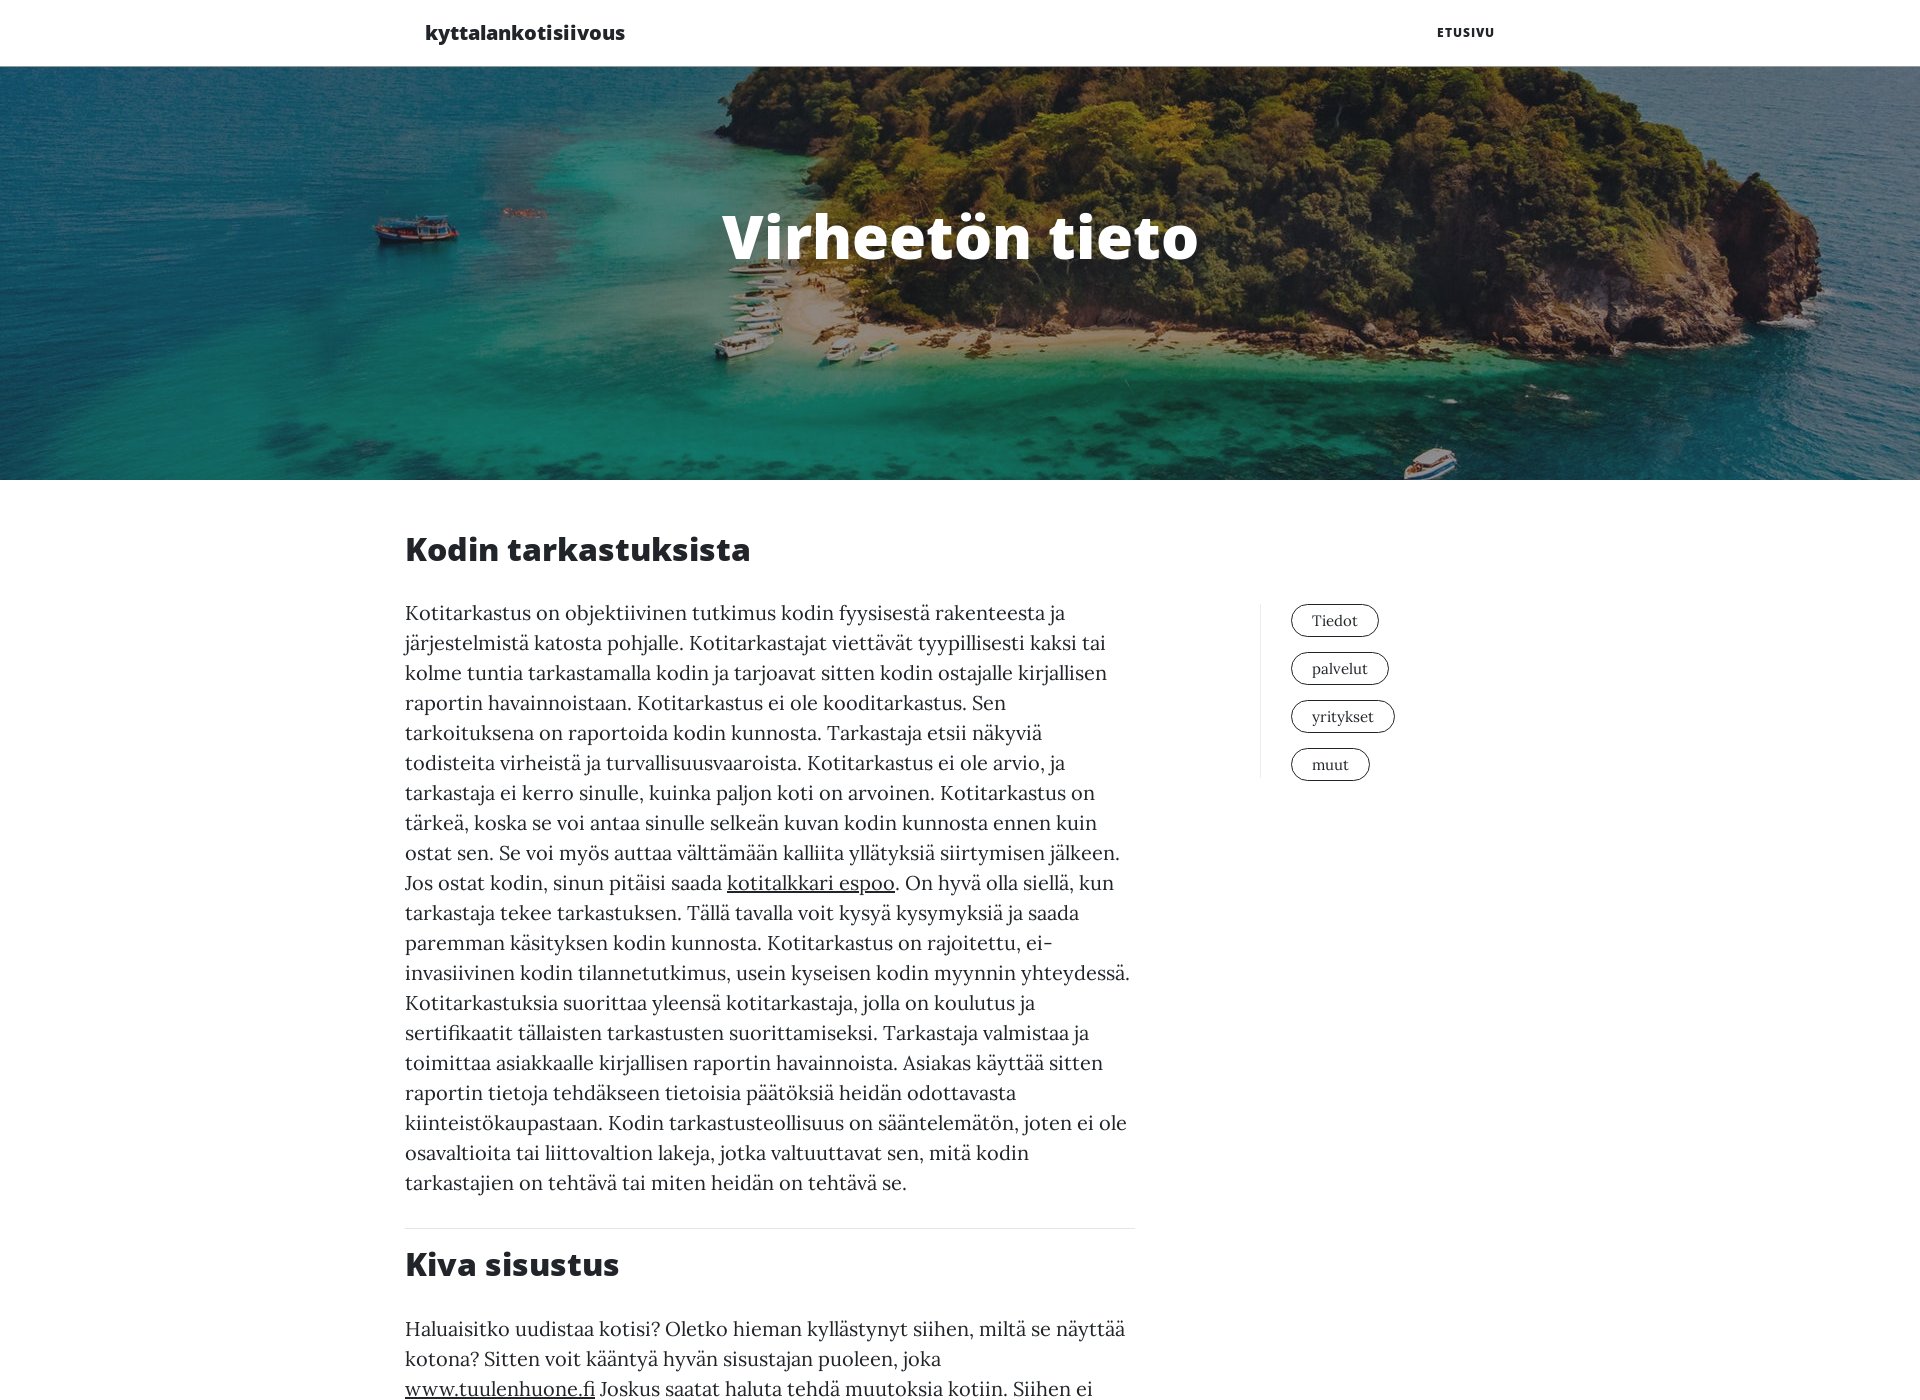 Skärmdump för kyttalankotisiivous.fi